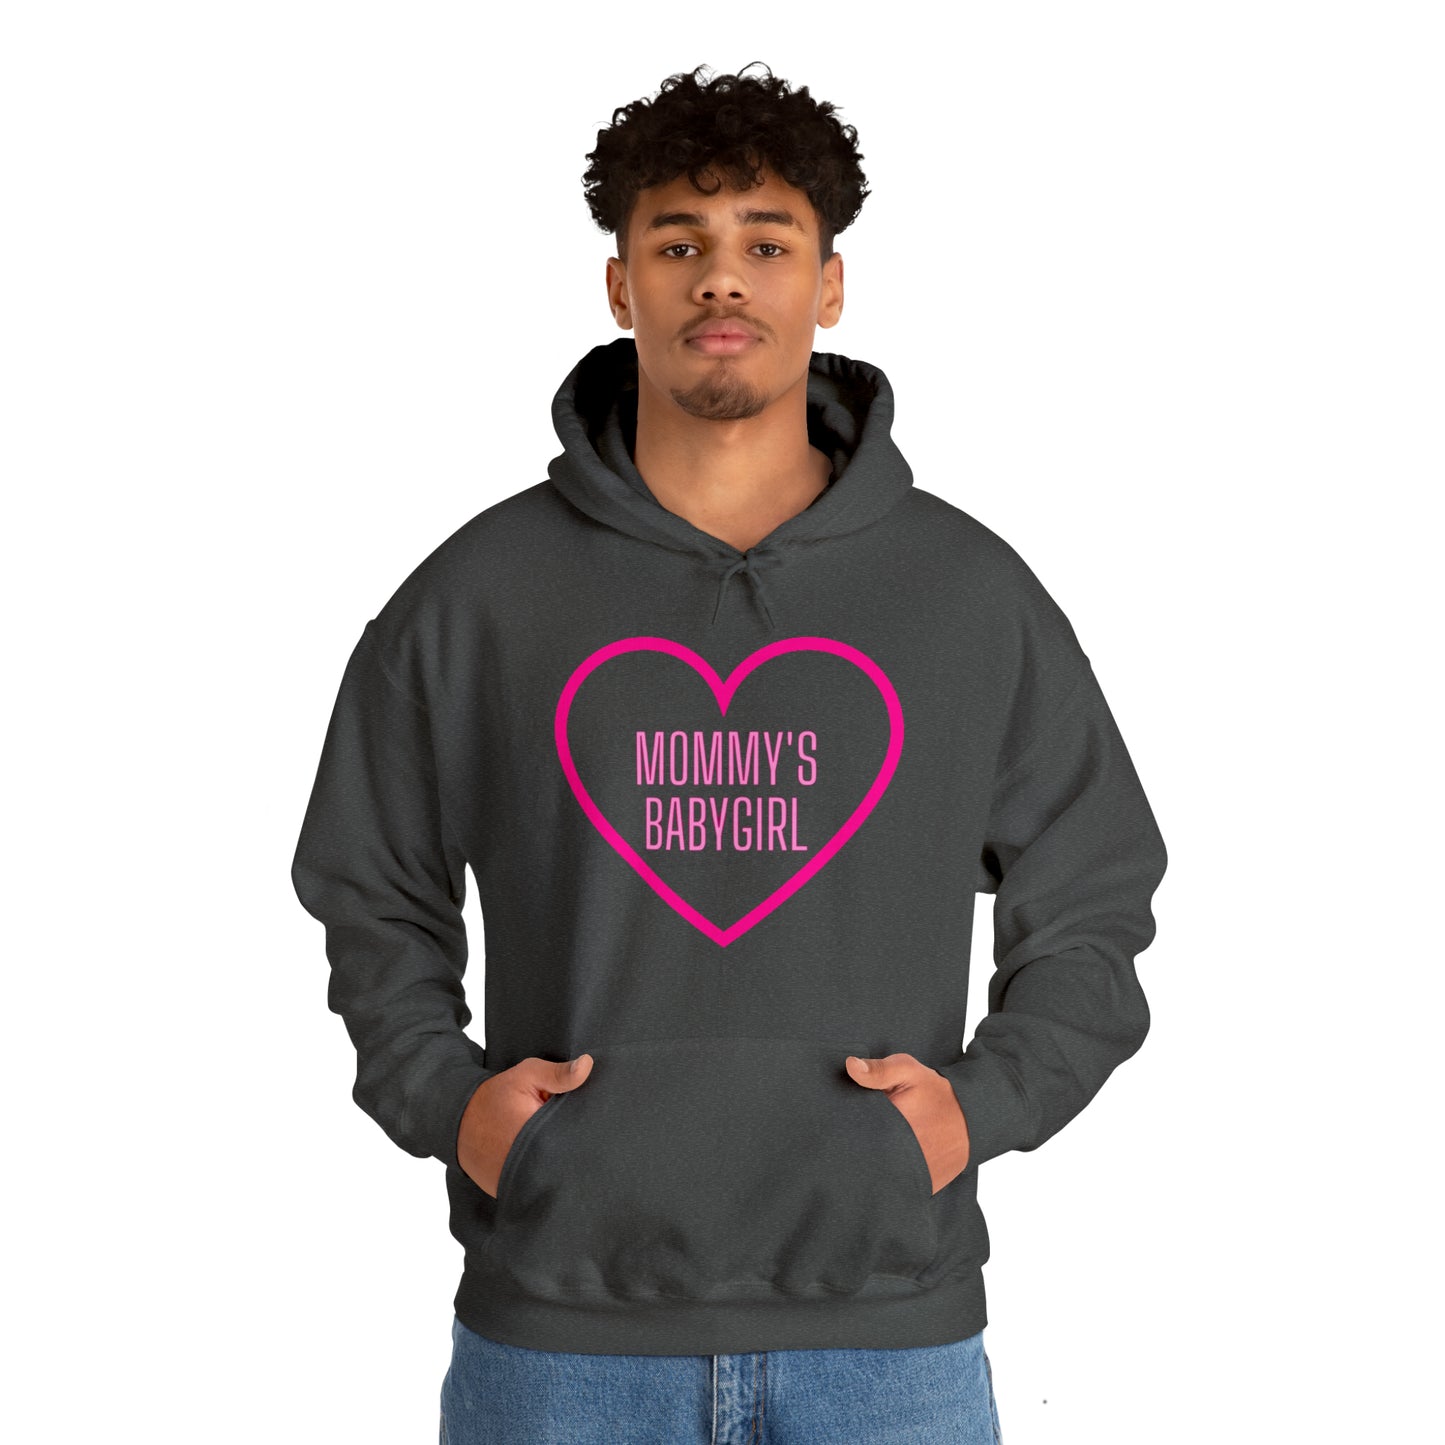 Mommy's Babygirl Unisex Hooded Sweatshirt